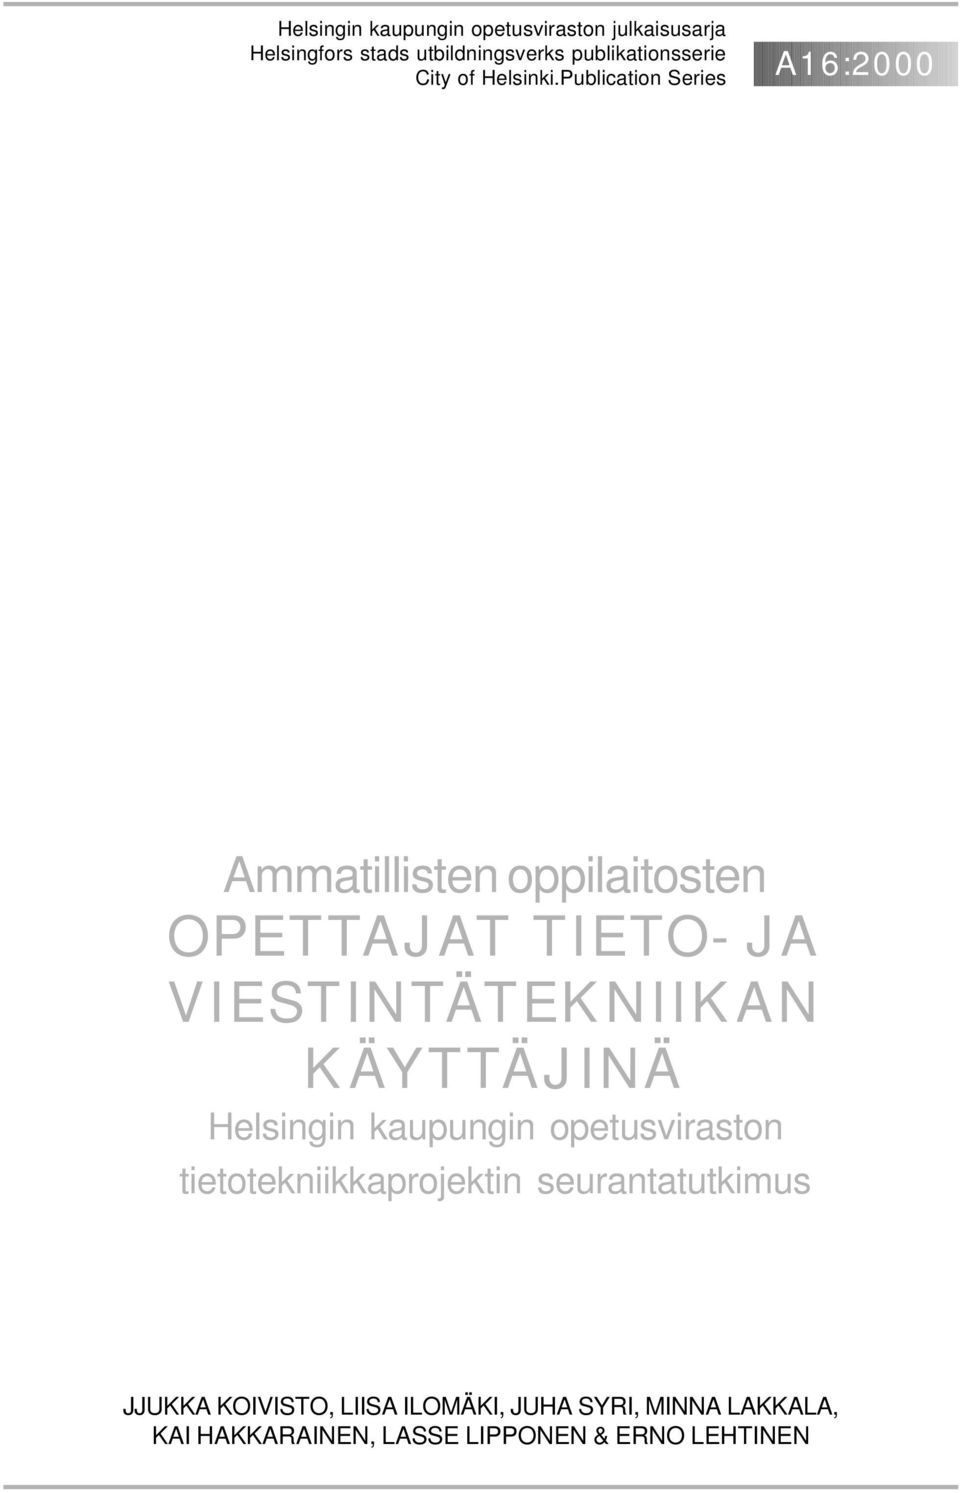 Publication Series A16:2000 Ammatillisten oppilaitosten OPETTAJAT TIETO- JA VIESTINTÄTEKNIIKAN